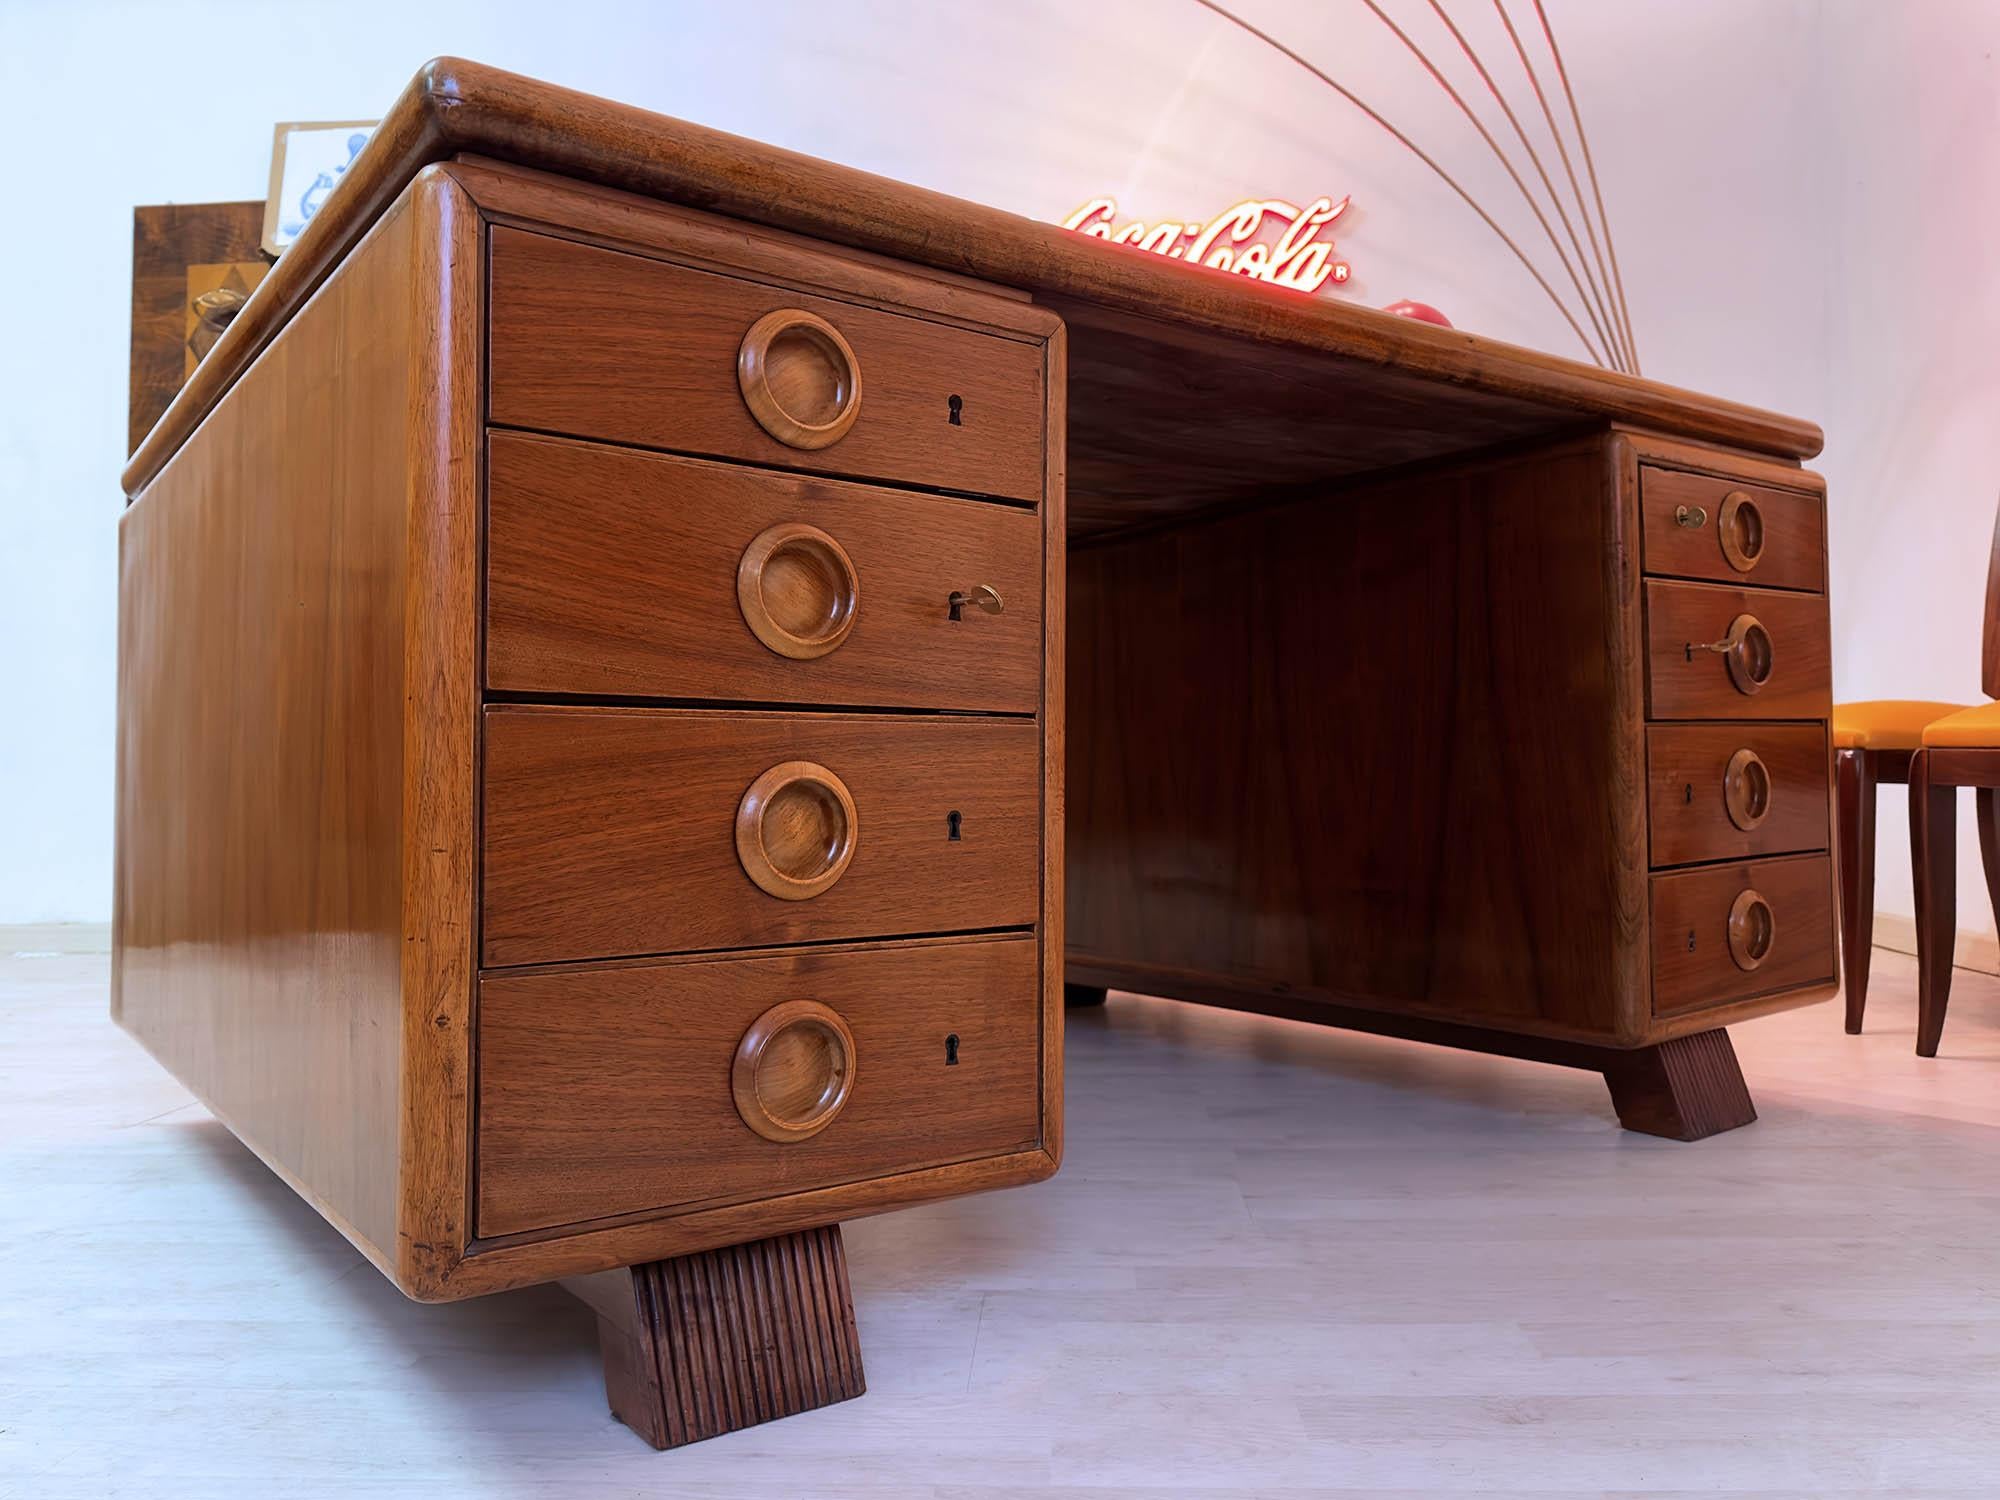 Atemberaubender italienischer doppelseitiger Schreibtisch aus den 1950er Jahren, der auf das Design von Paolo Buffa zurückgeht.
Er ist mit acht Schubladen pro Seite ausgestattet, die alle abschließbar sind, und befindet sich in einem für die